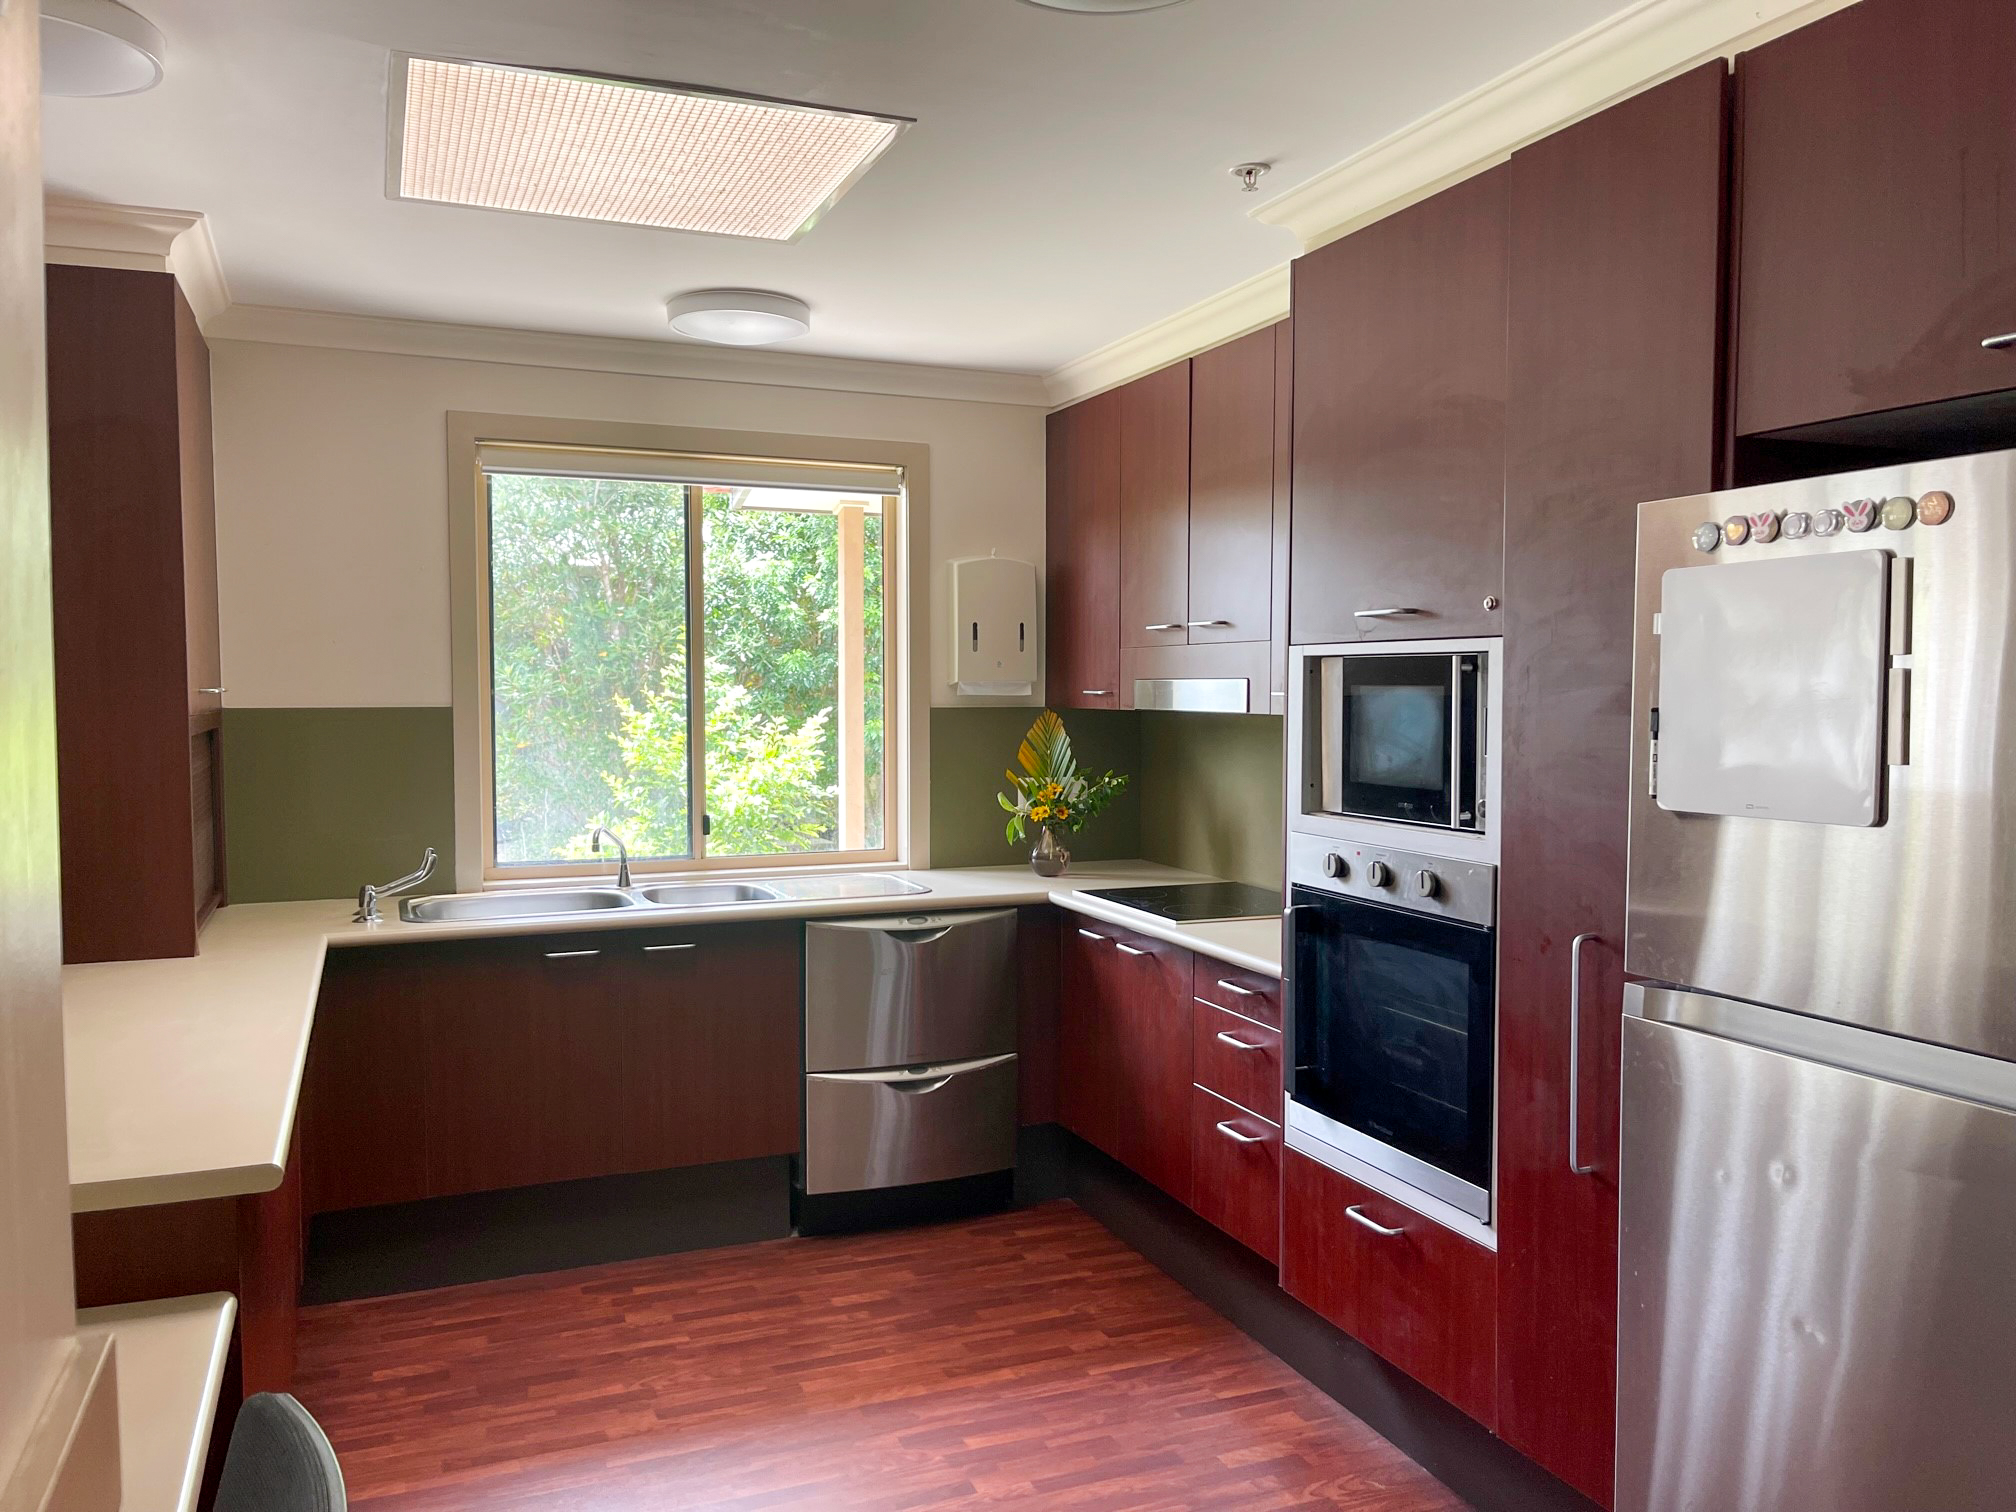 A kitchen with dark brown cabinets